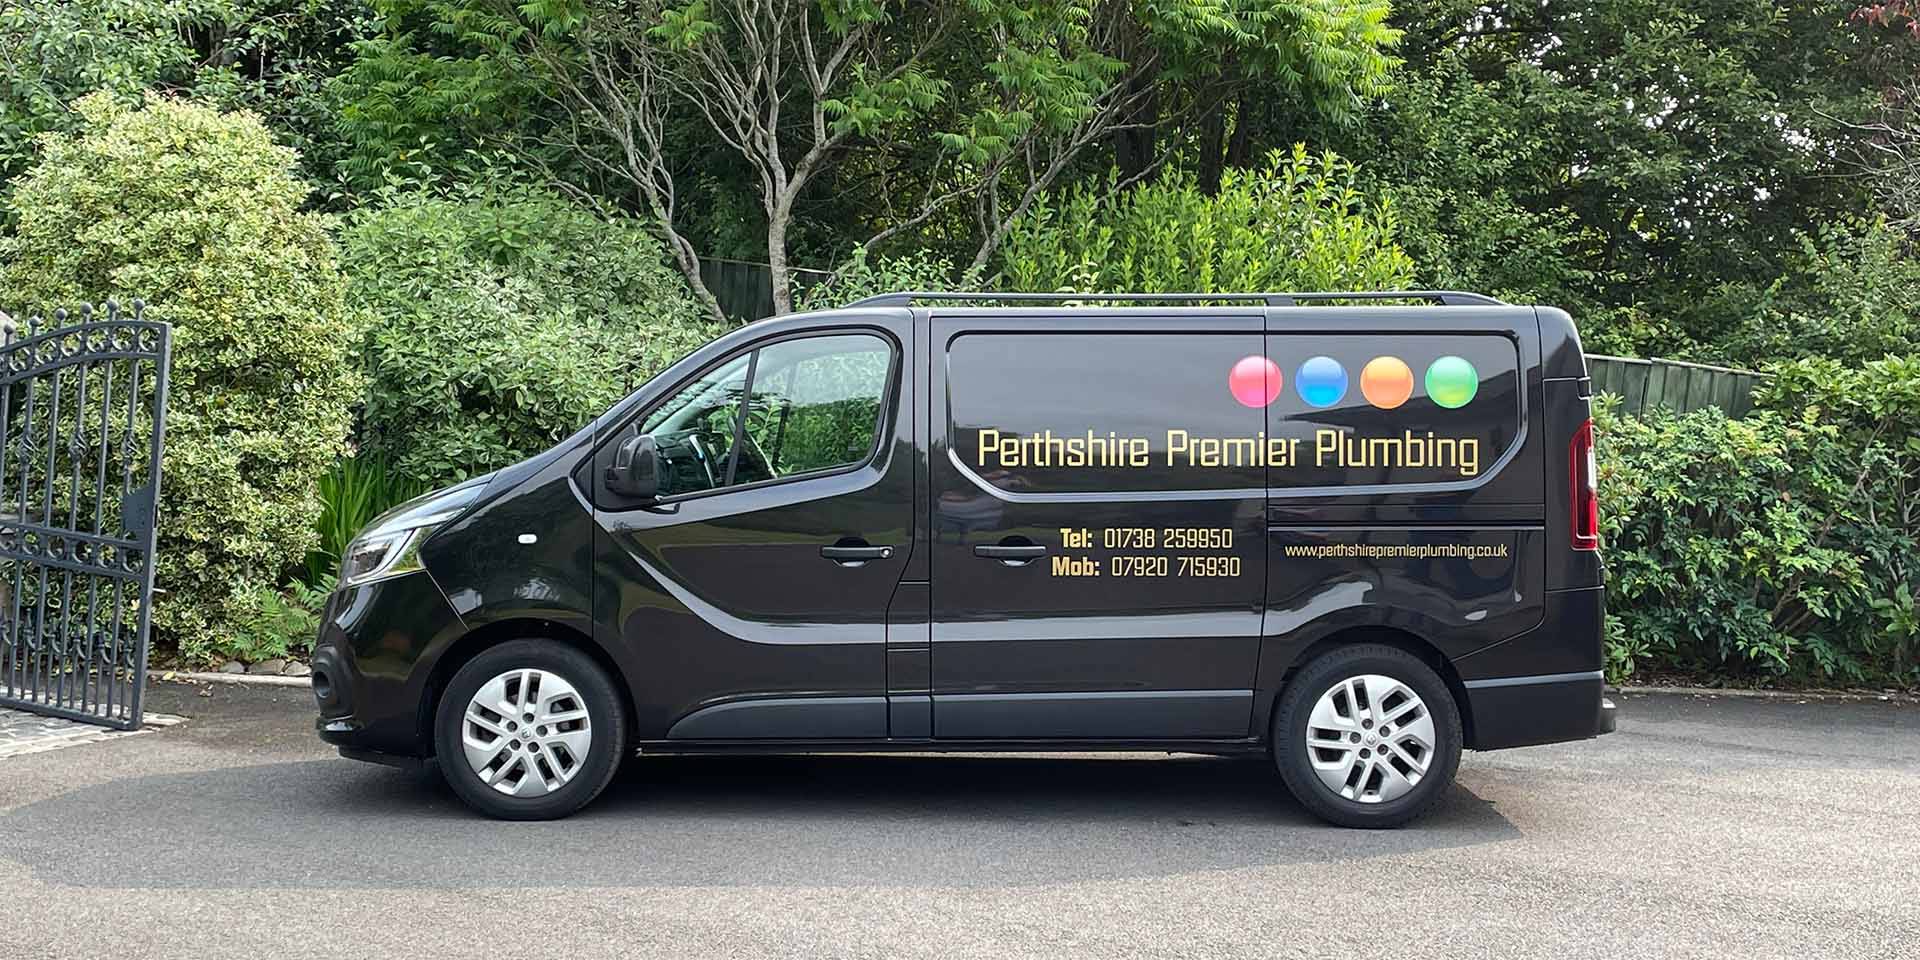 Perthshire Premier Plumbing Perth 07920 715930